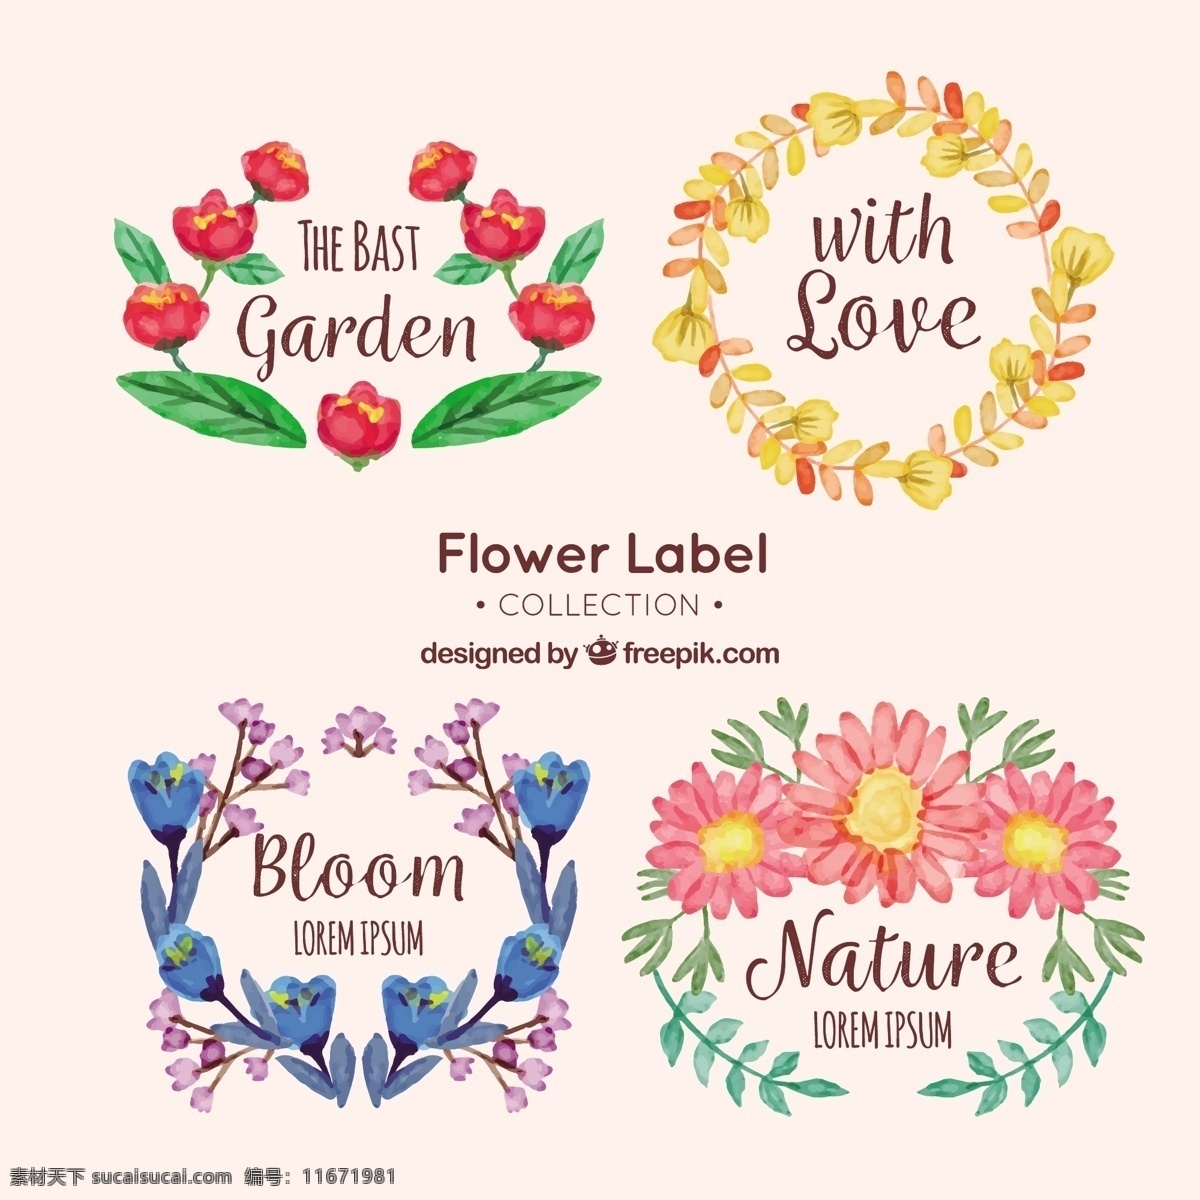 四 种 水彩 风格 花卉 标签 四种 水彩风格 花卉标签